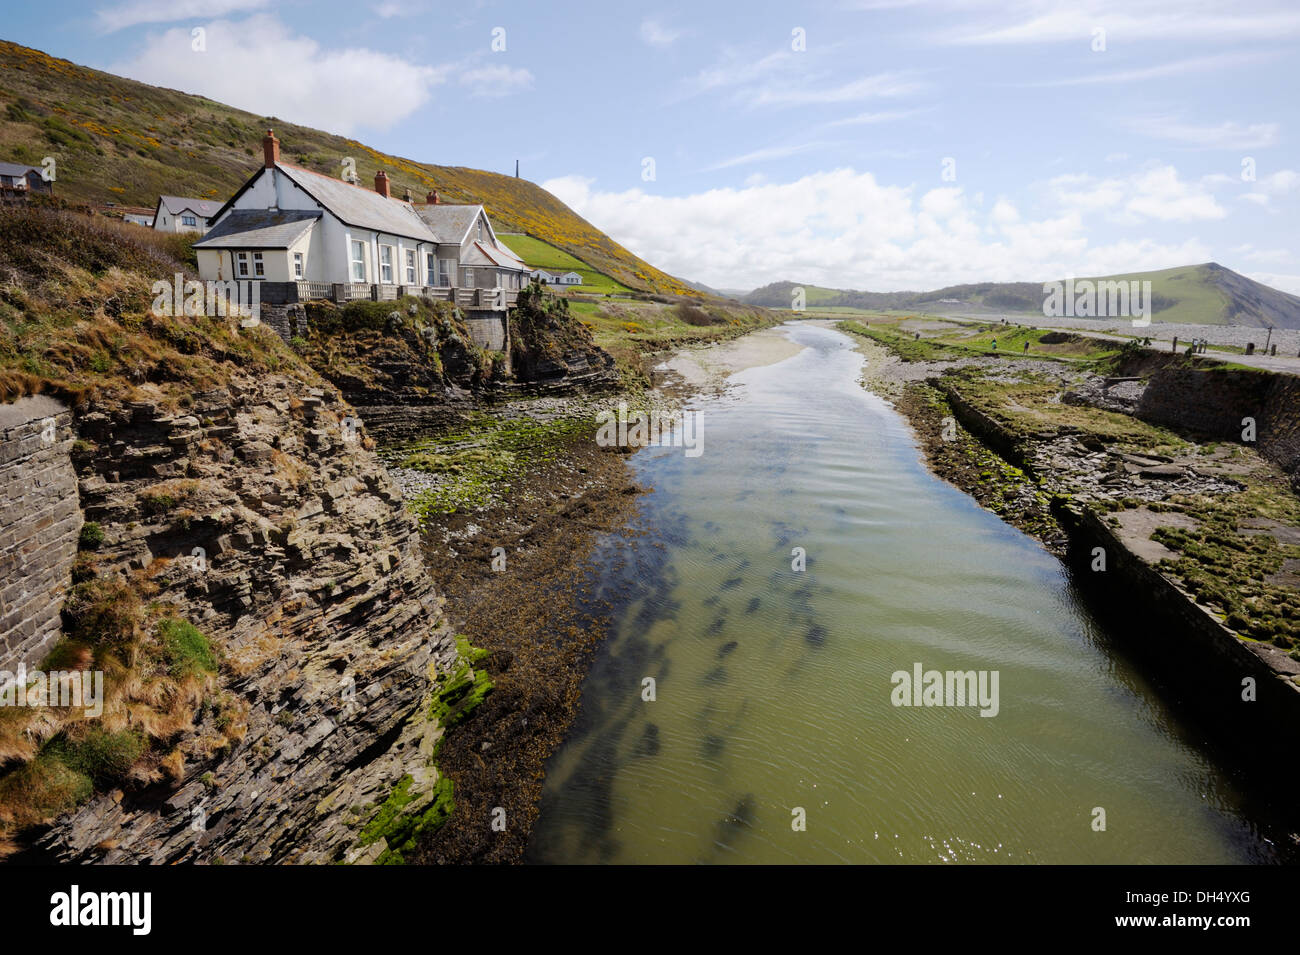 Il fiume Ystwyth, sezione di marea in esecuzione dietro Tan y Bwlch beach con penna Dinas collina alle spalle, Aberystwyth, Wales, Regno Unito. Foto Stock